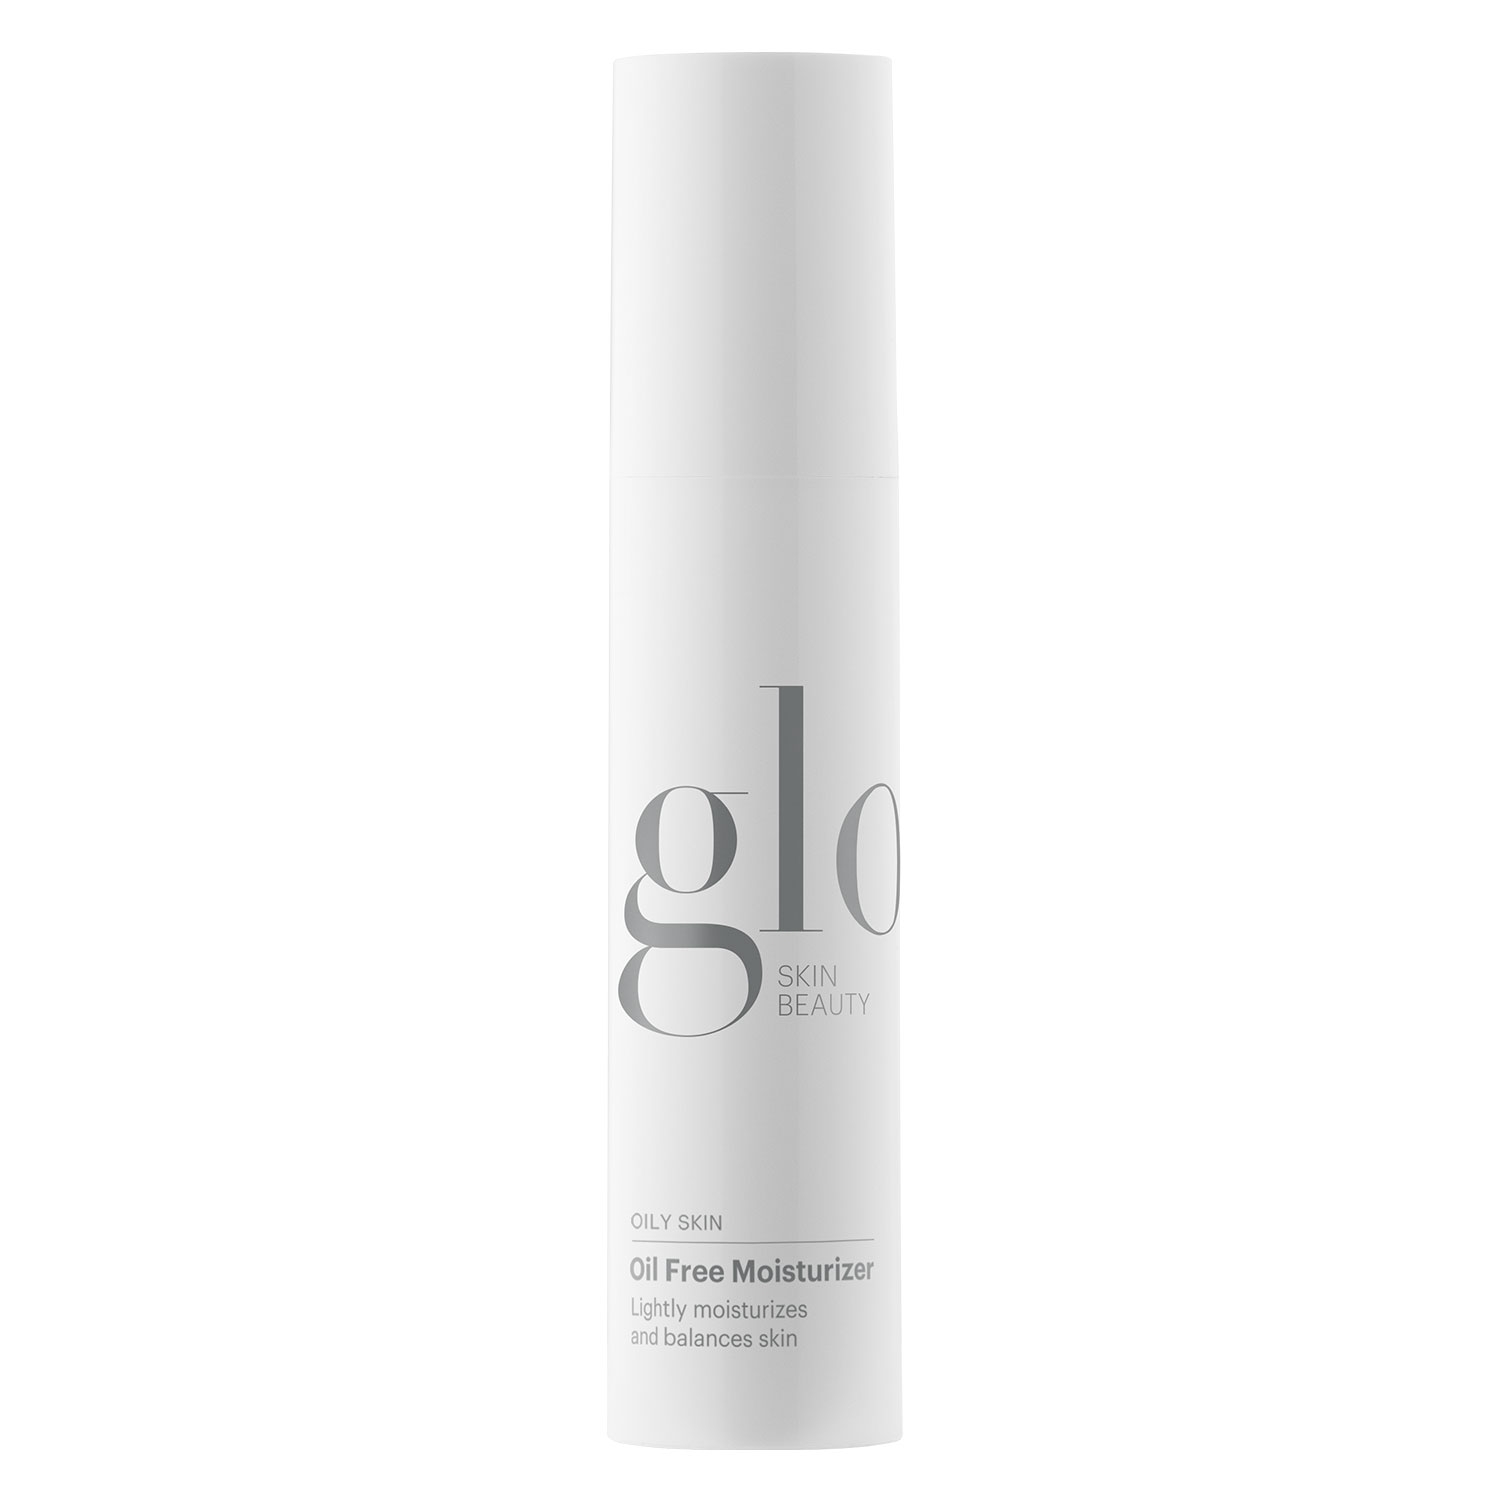 Produktbild von Glo Skin Beauty Care - Oil Free Moisturizer